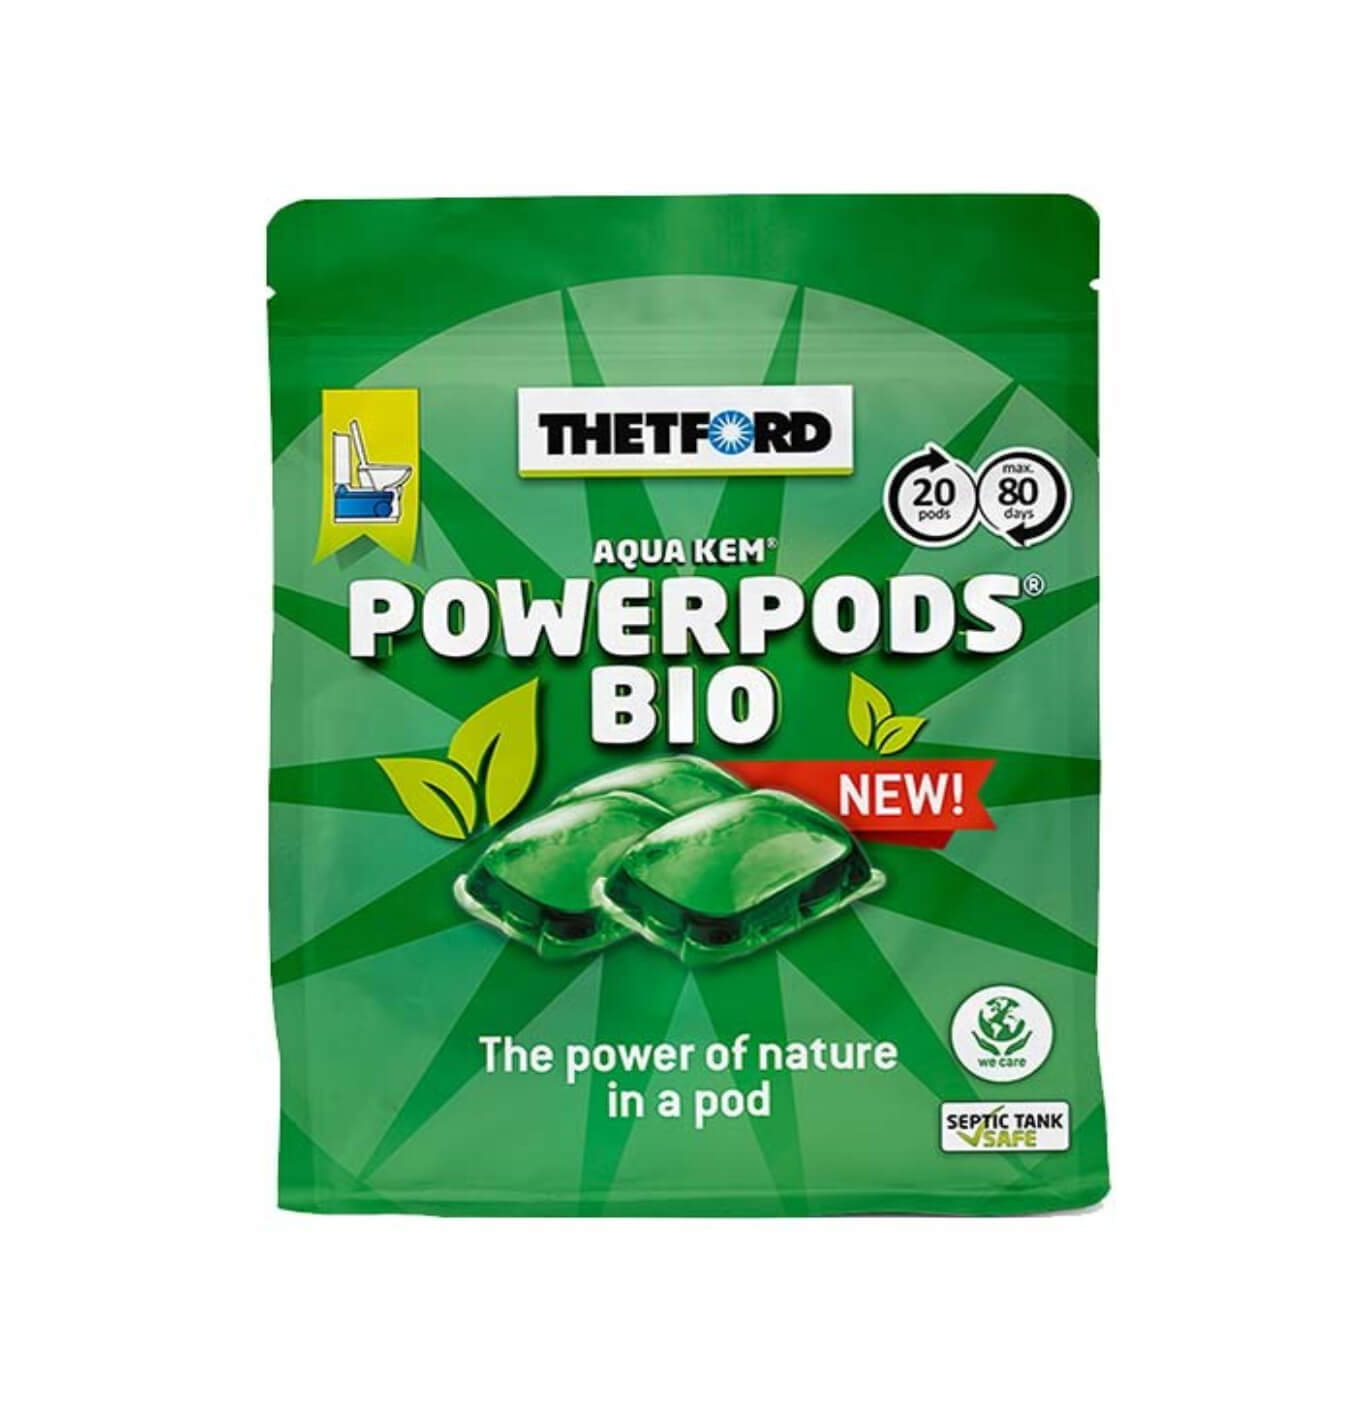 Thetford Aqua Kem PowerPods Bio Green Pods | 20 Pods Image